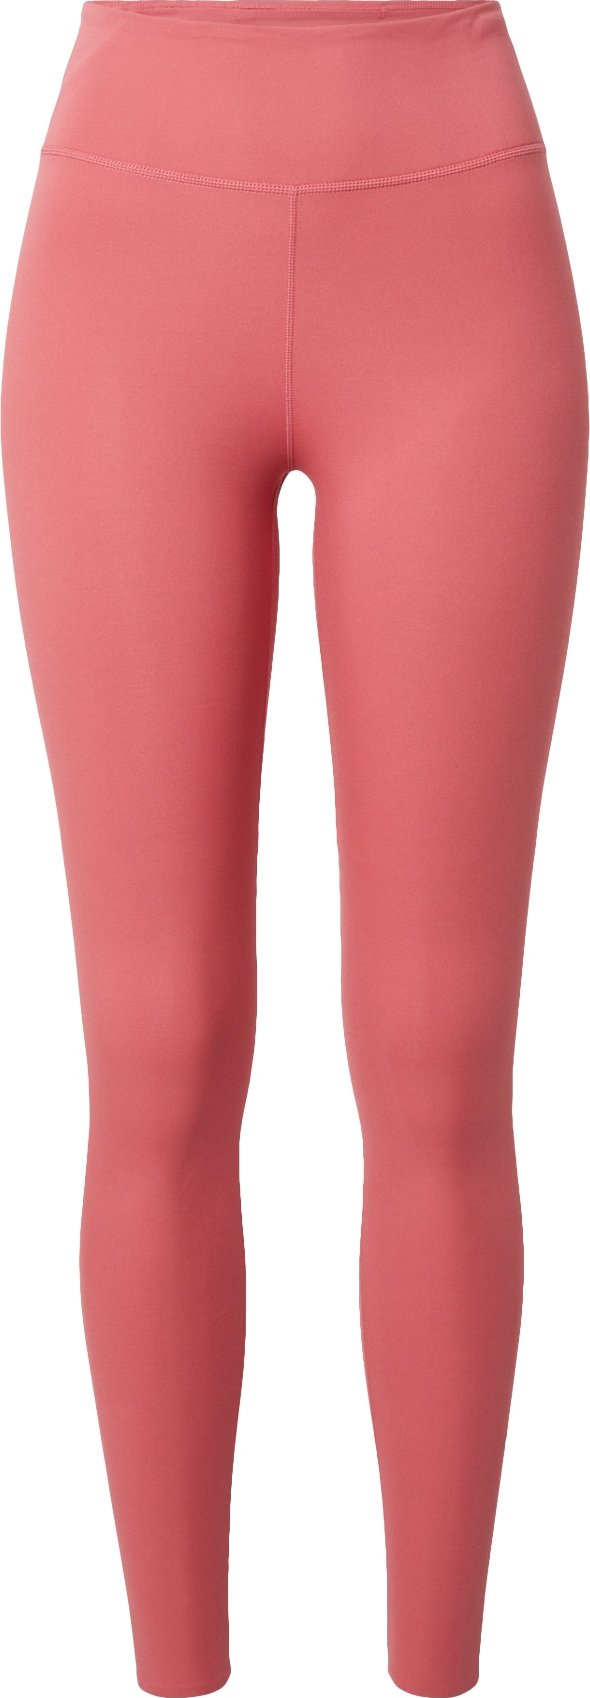 NIKE Sportovní kalhoty 'One Luxe' pink